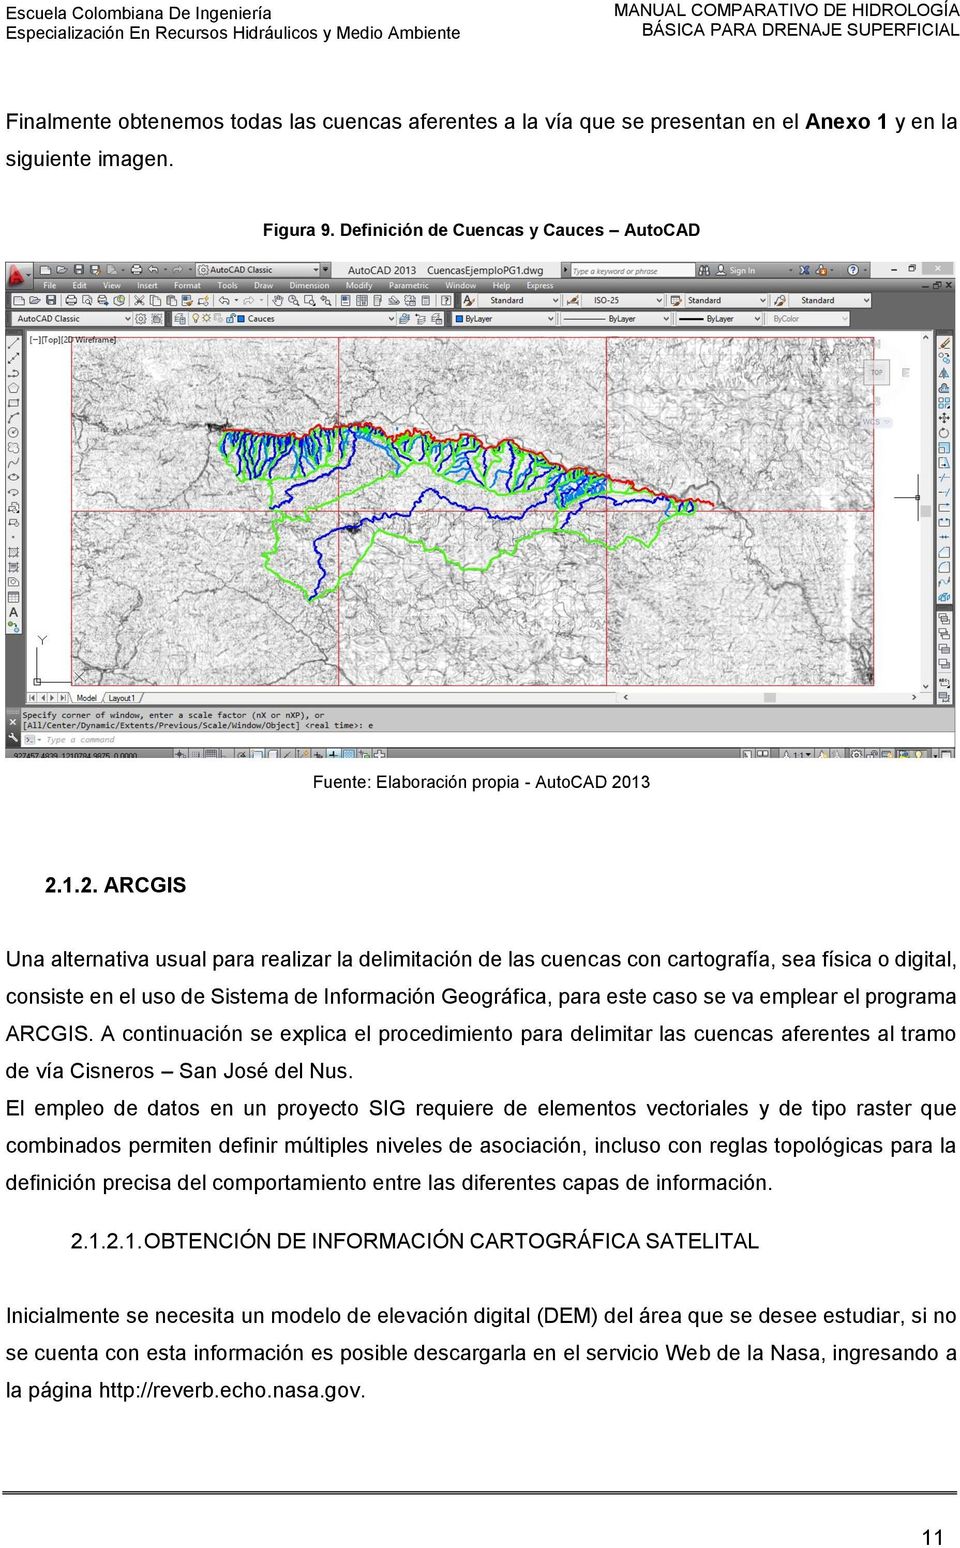 13 2.1.2. ARCGIS Una alternativa usual para realizar la delimitación de las cuencas con cartografía, sea física o digital, consiste en el uso de Sistema de Información Geográfica, para este caso se